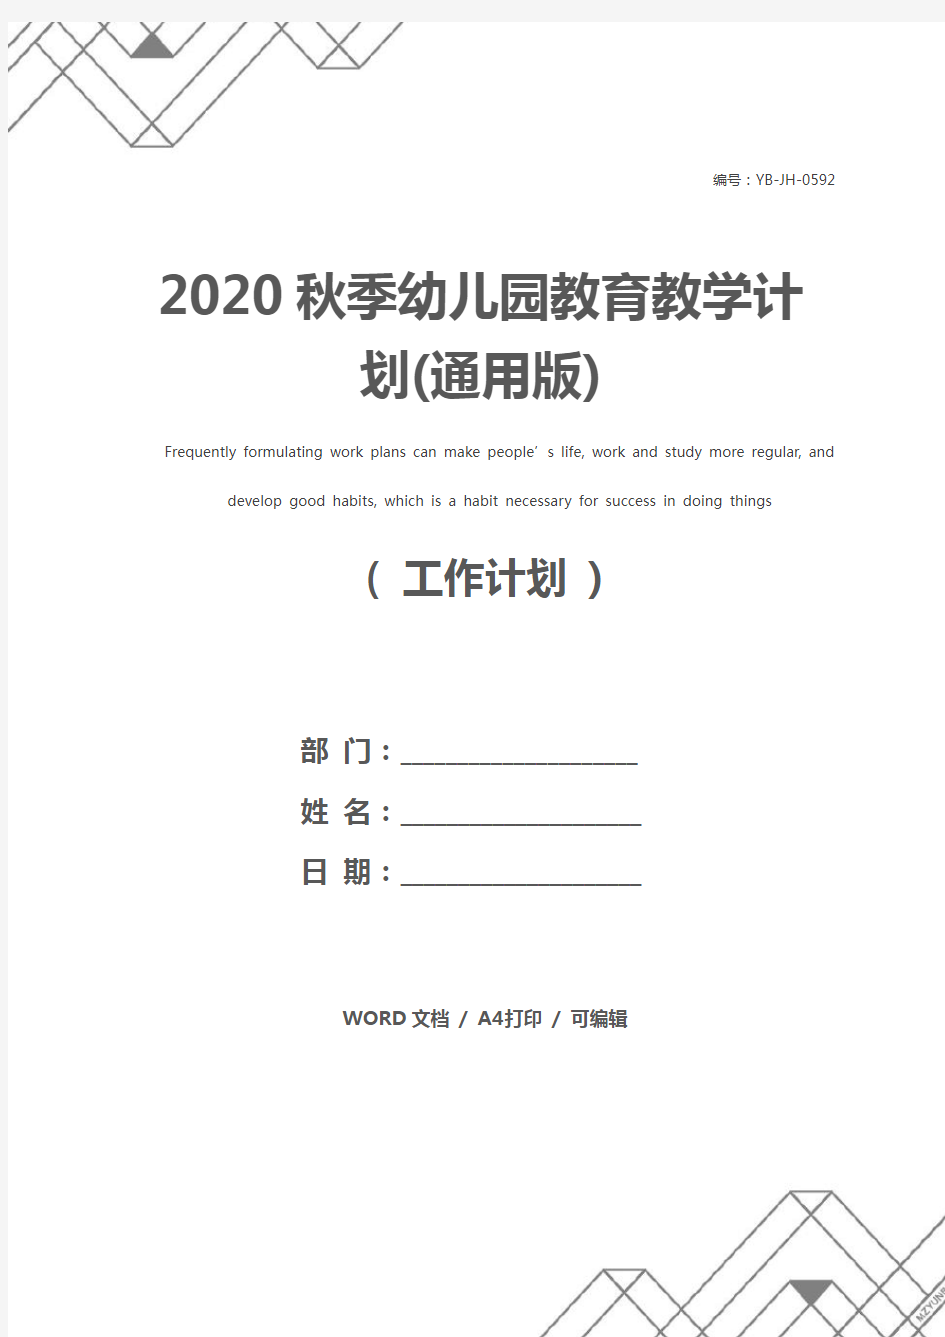 2020秋季幼儿园教育教学计划(通用版)